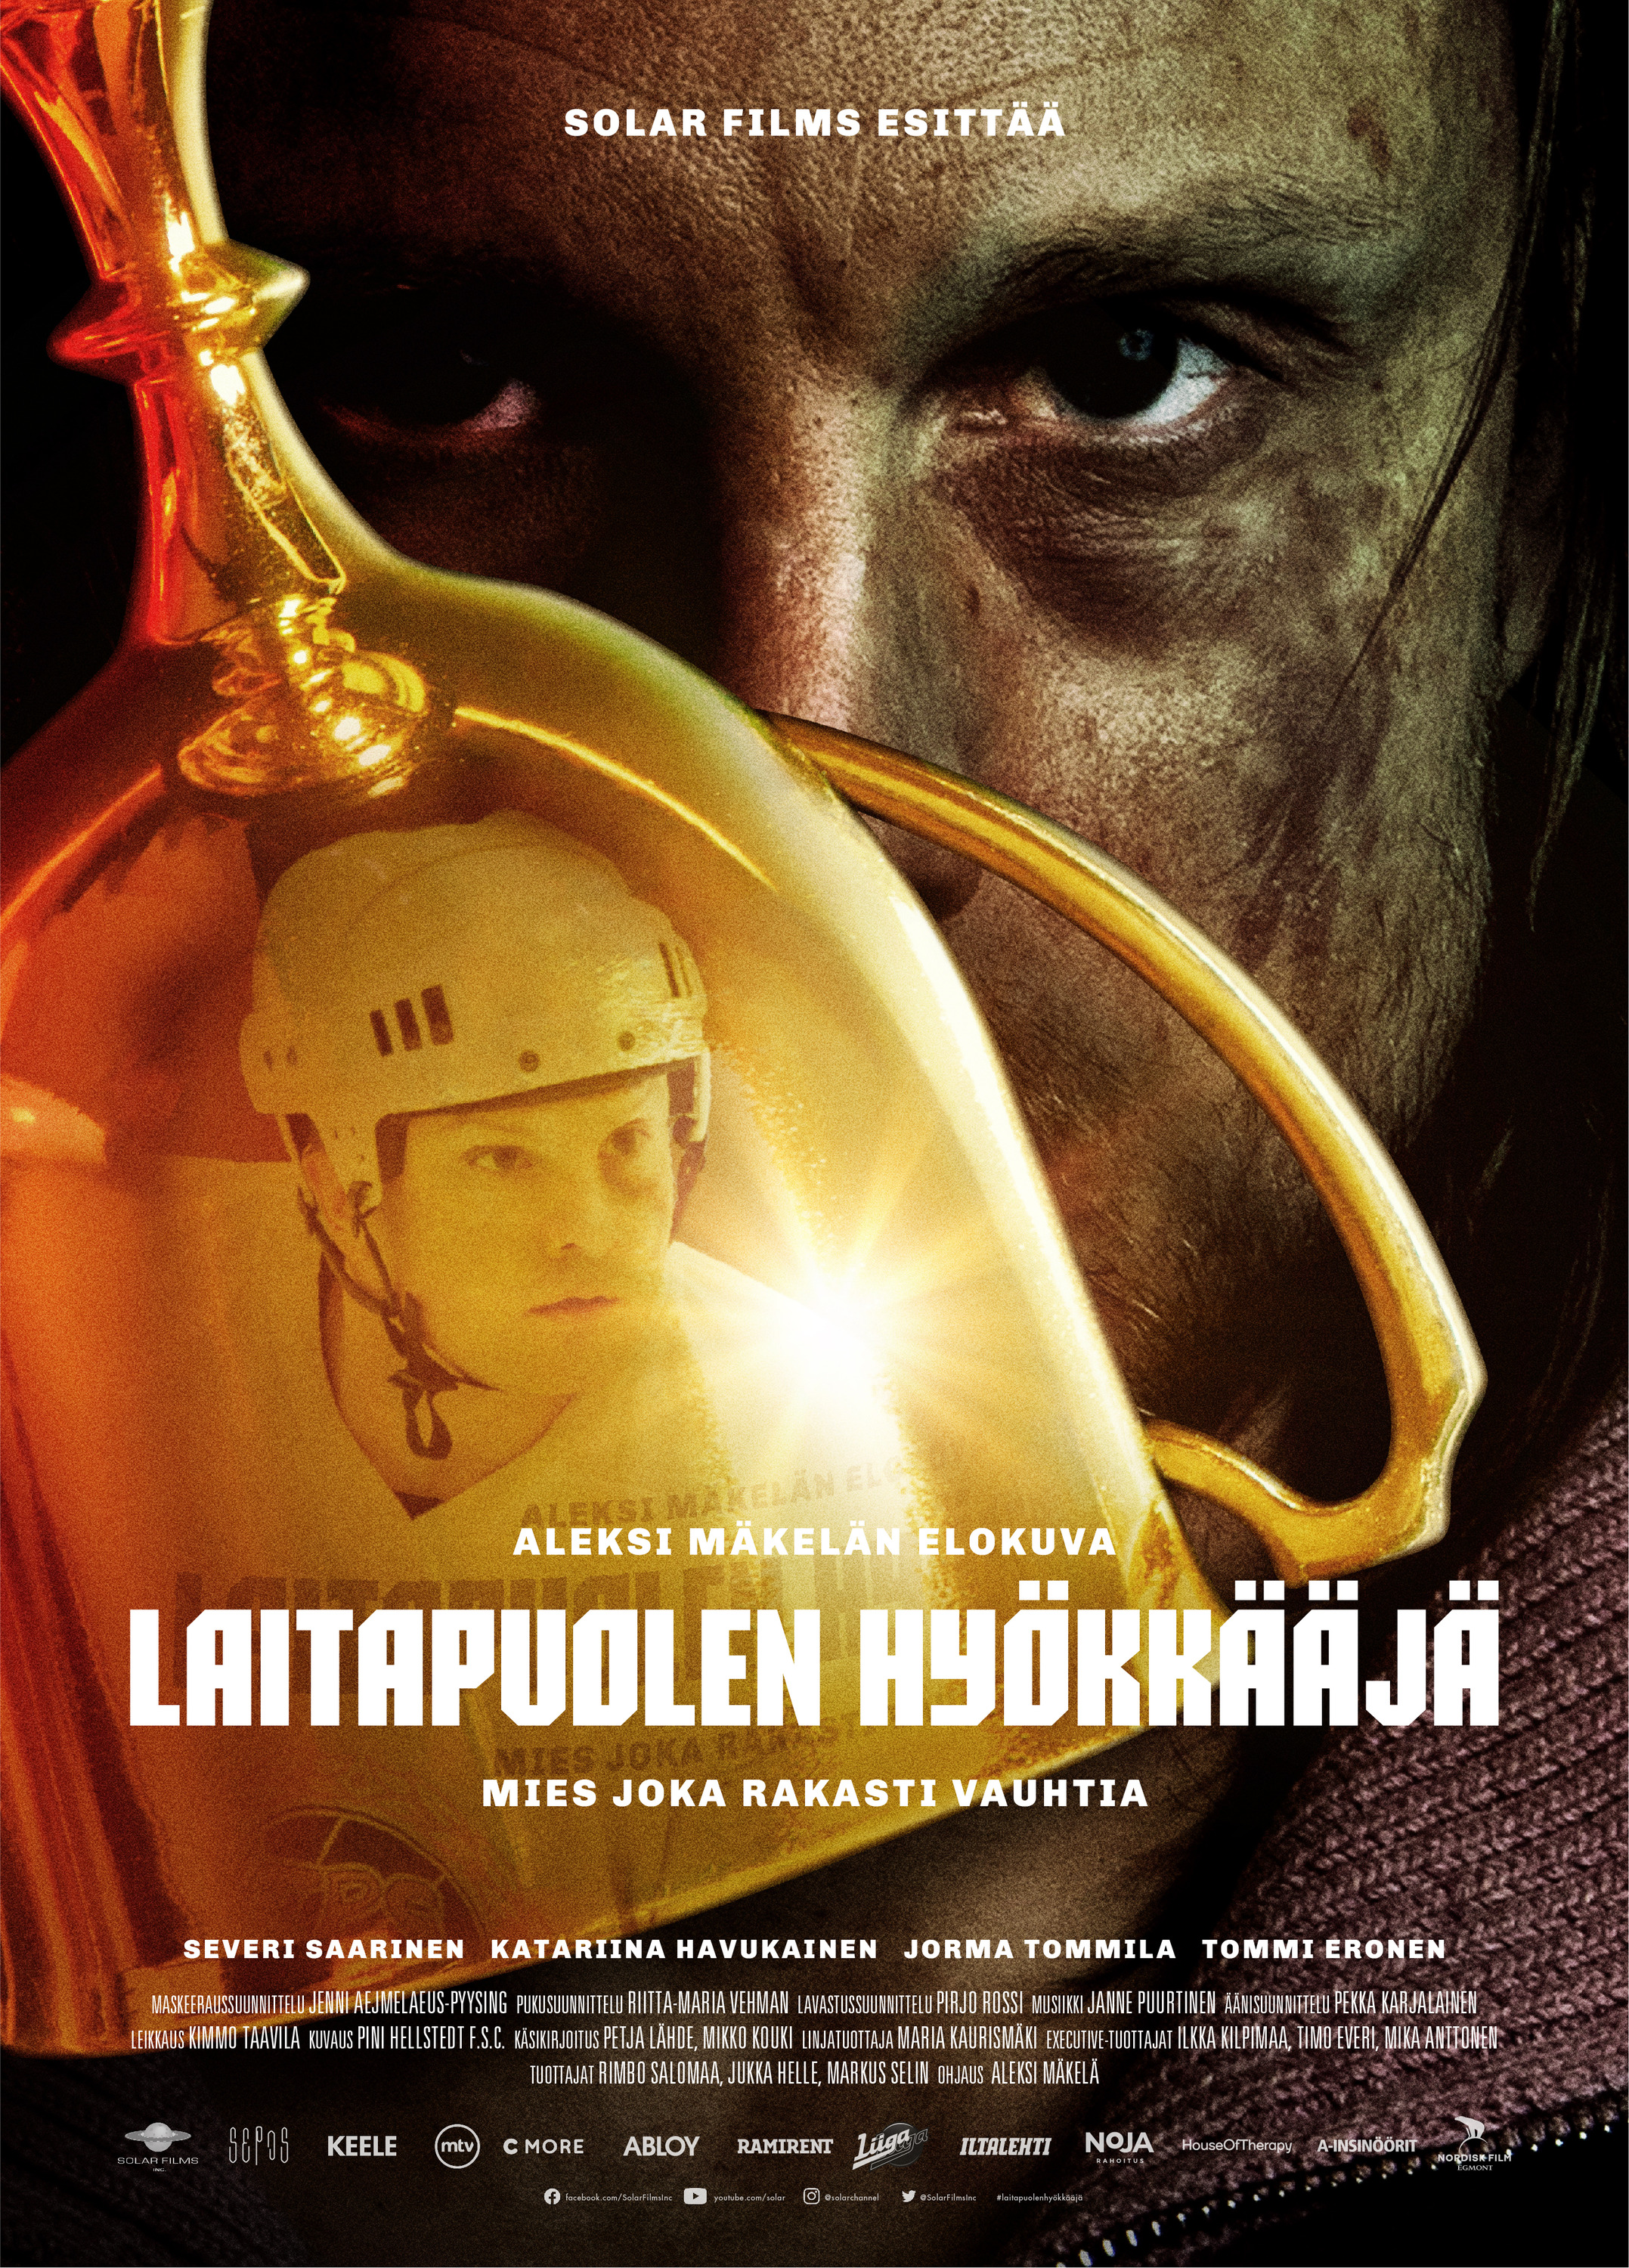 Mega Sized Movie Poster Image for Laitapuolen hyökkääjä 